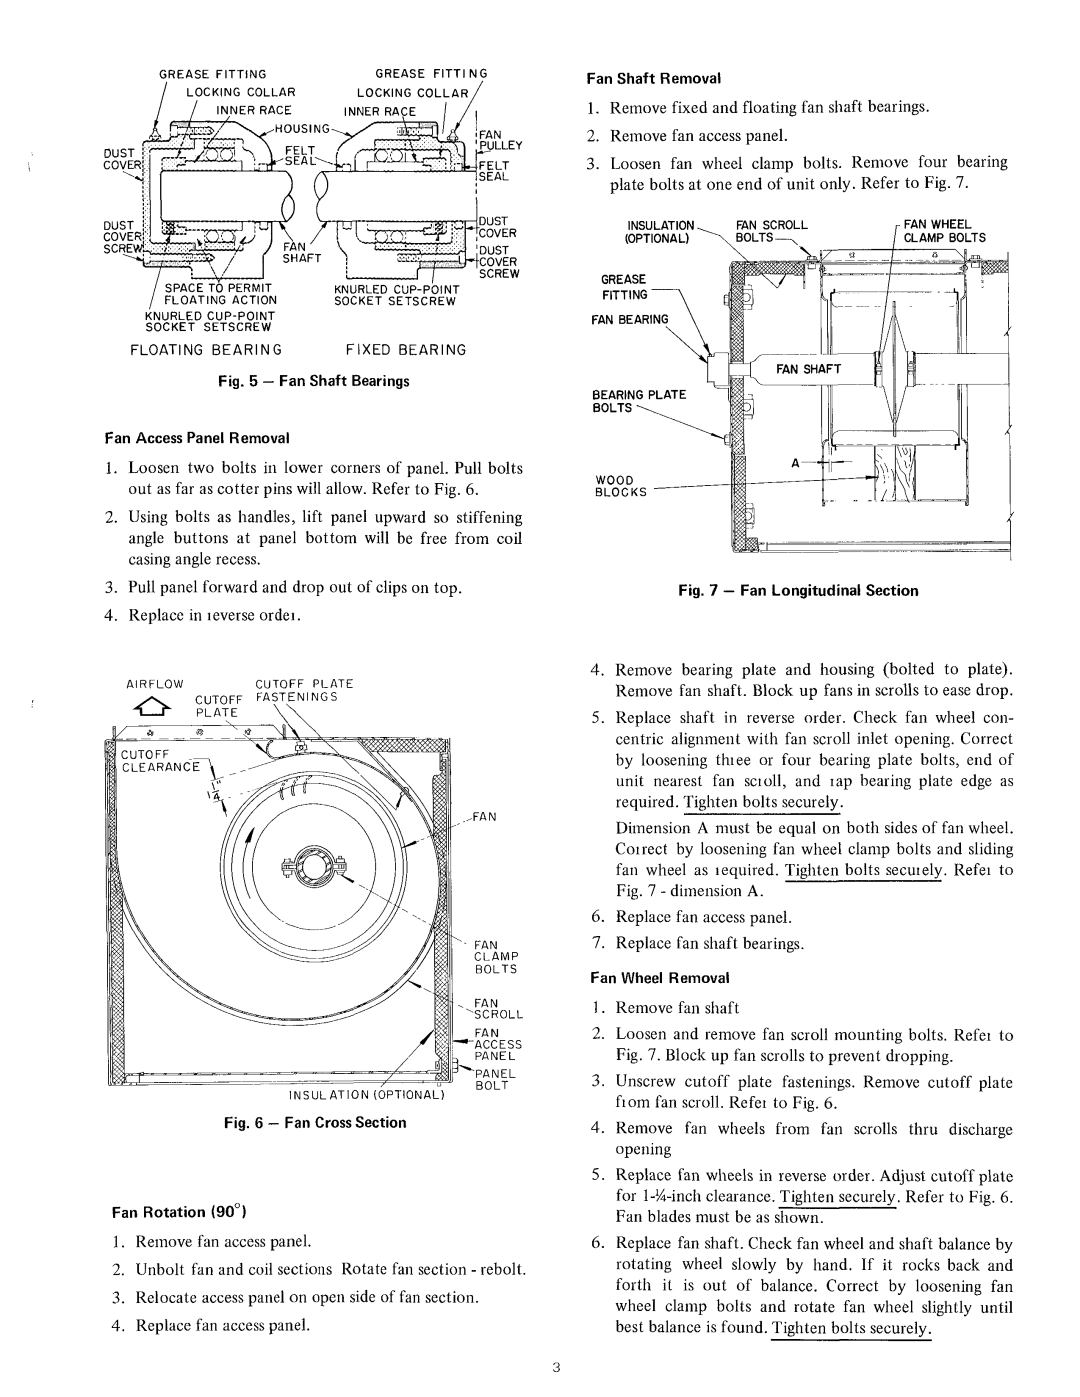 Carrier 09FA manual 